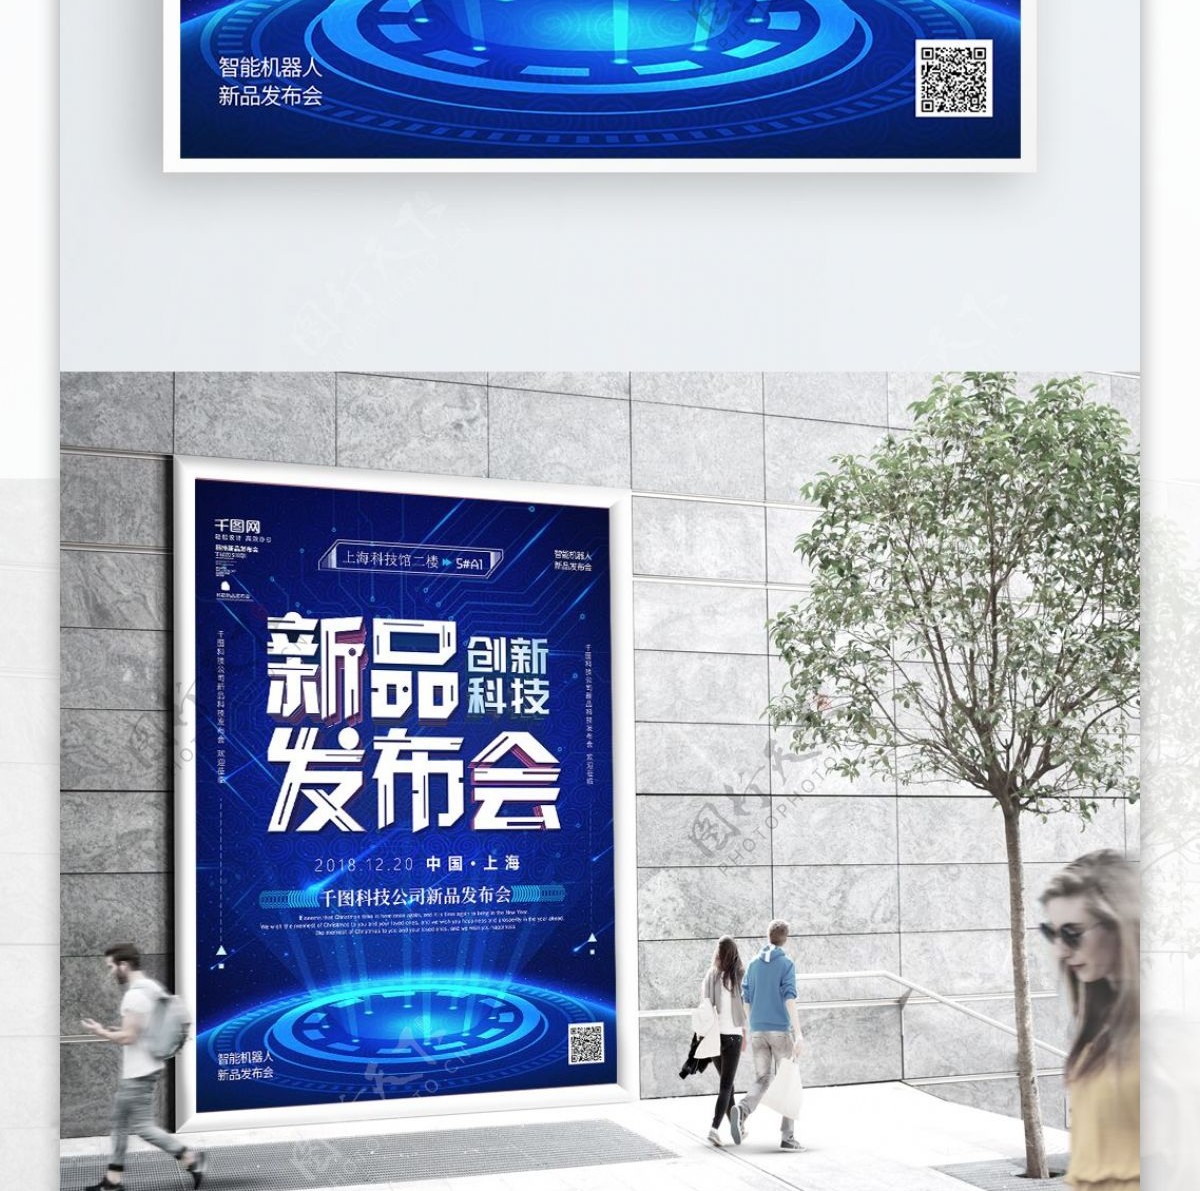 蓝色科技风科技新品发布会商业海报